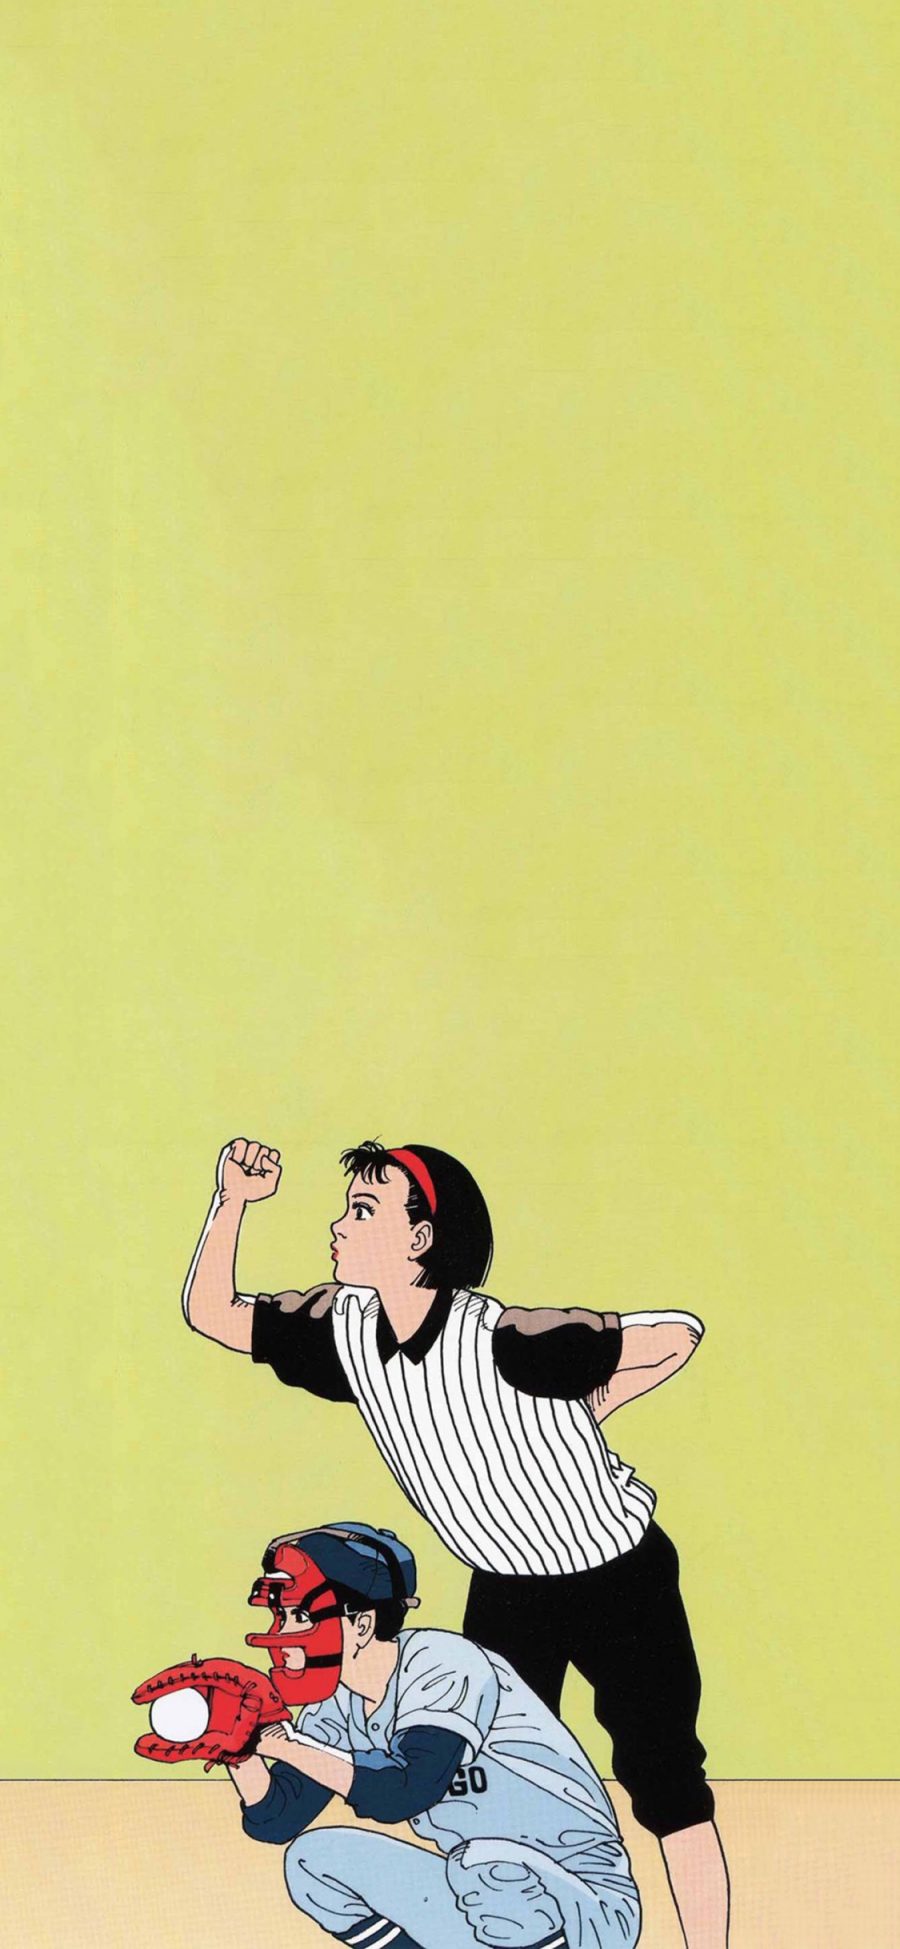 [2436×1125]日系 动漫 网球 少年 苹果手机动漫壁纸图片